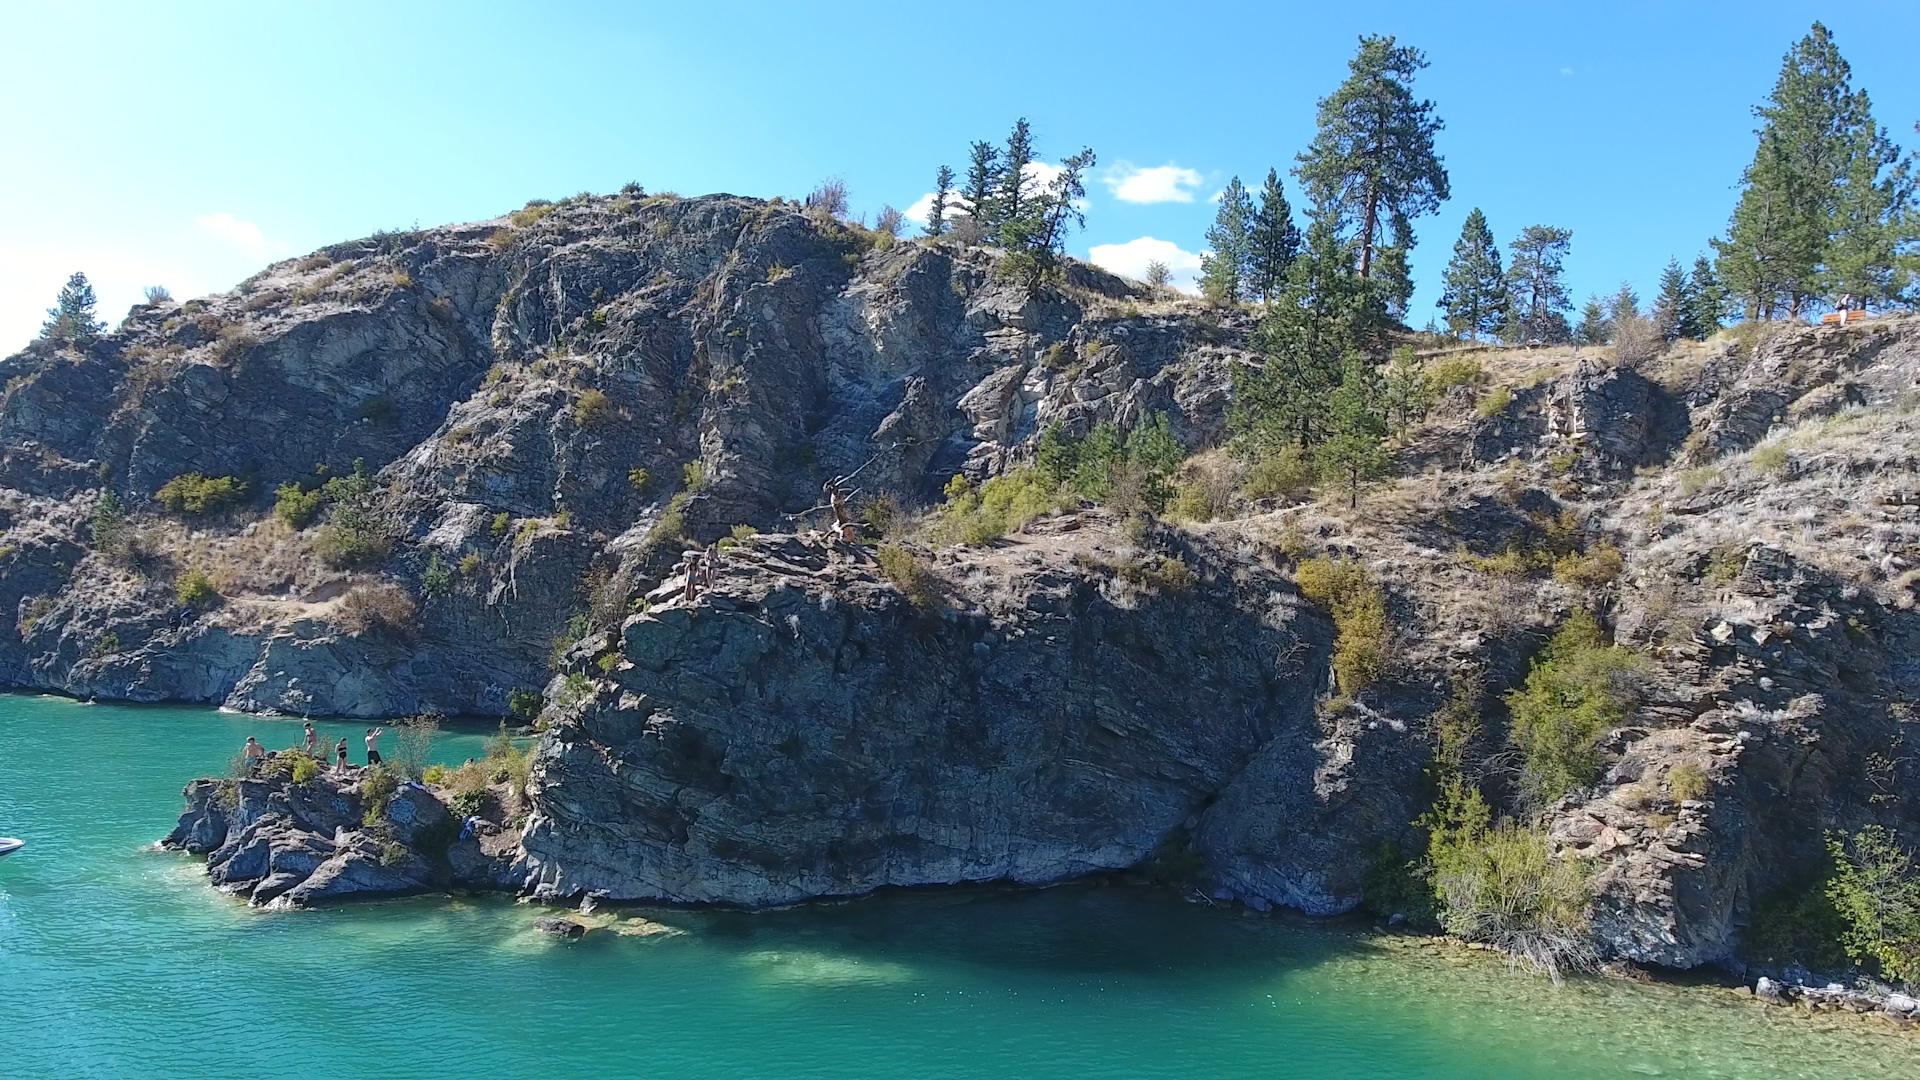 The Cliffs at Kalamalka Lake Provincial Park